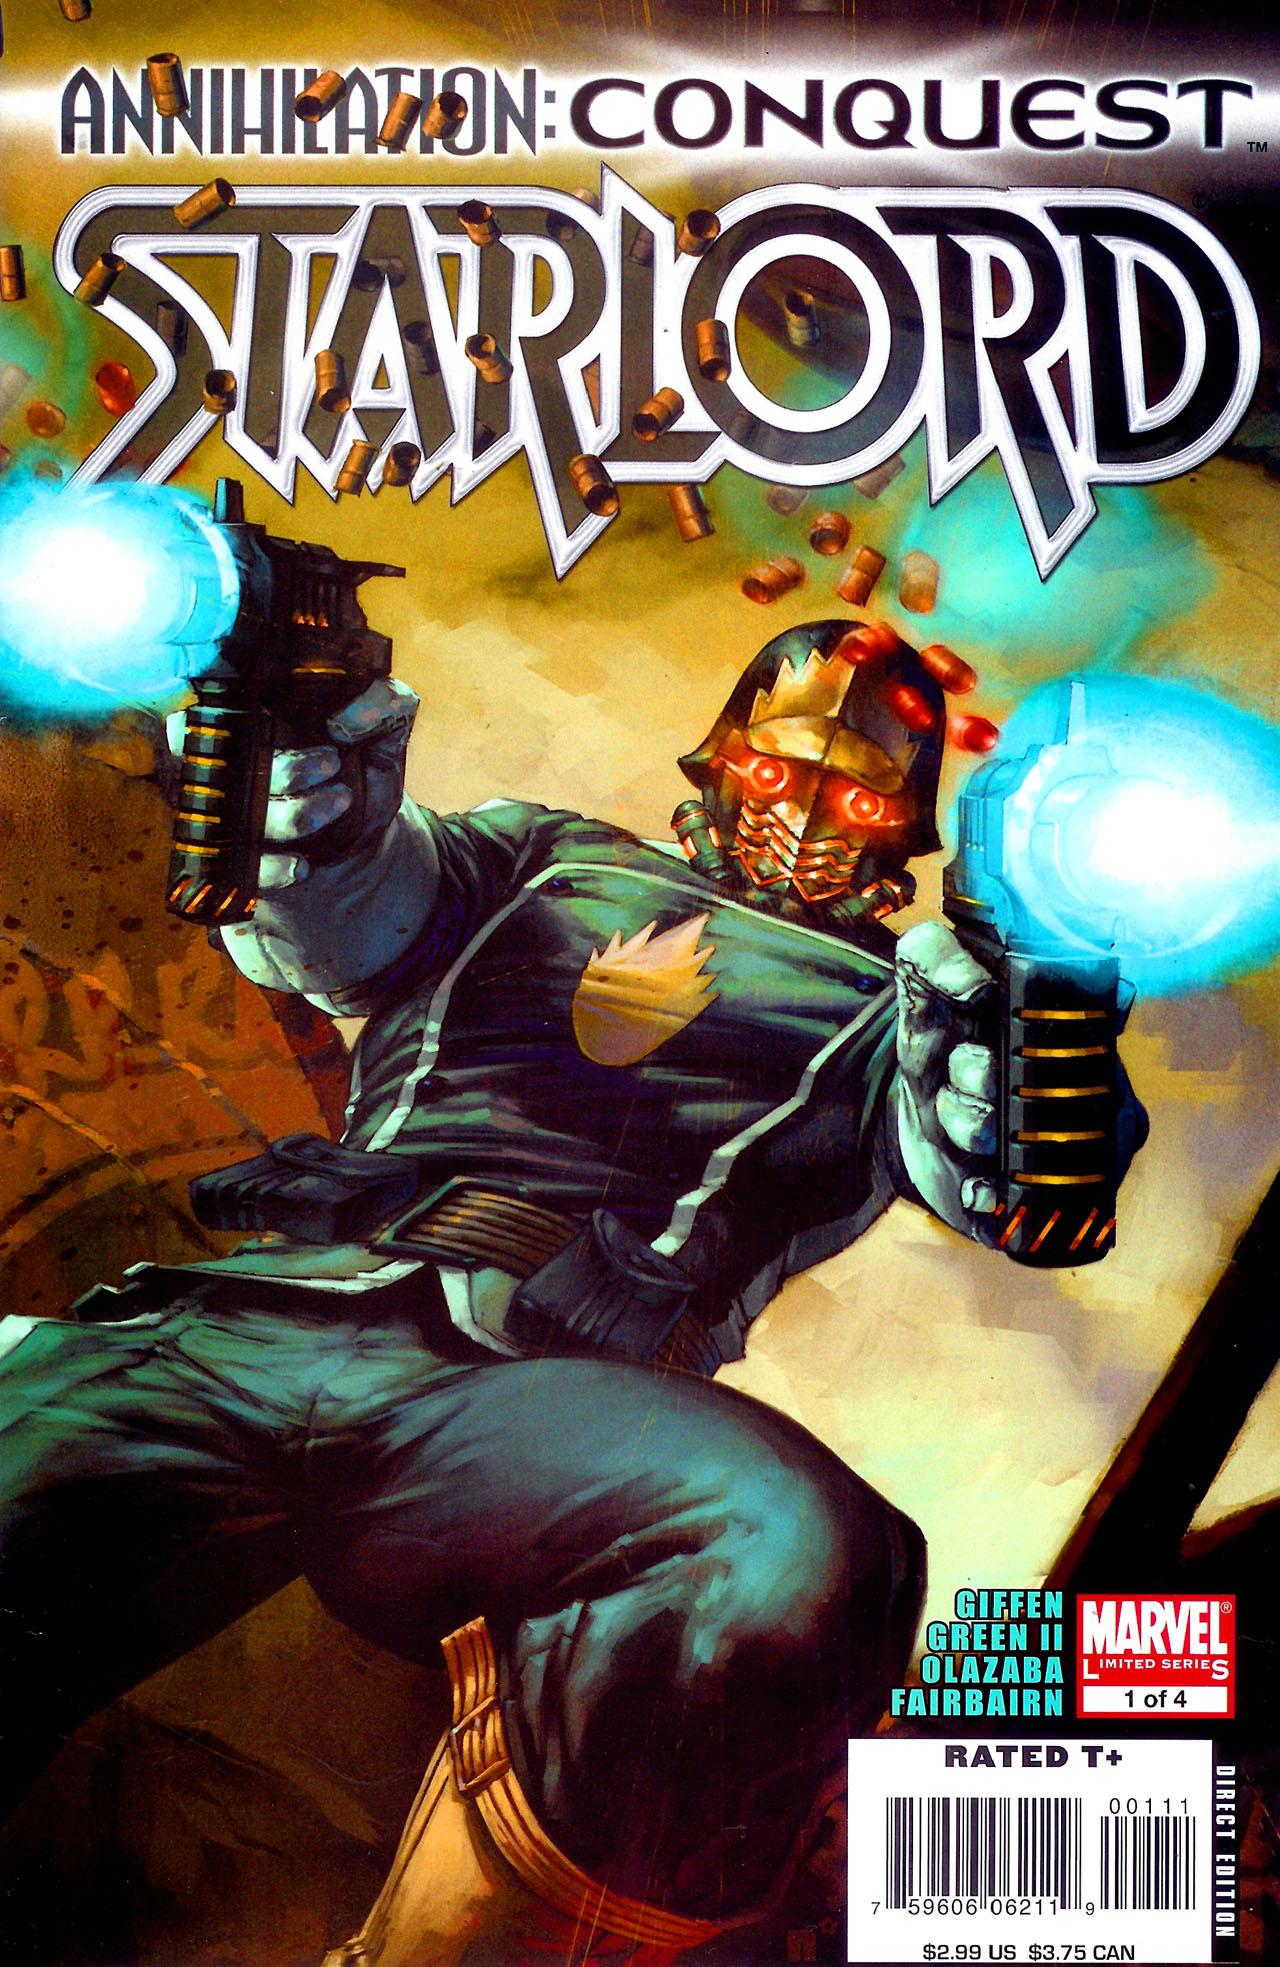 Annihilation: Conquest - Starlord Vol. 1 #1